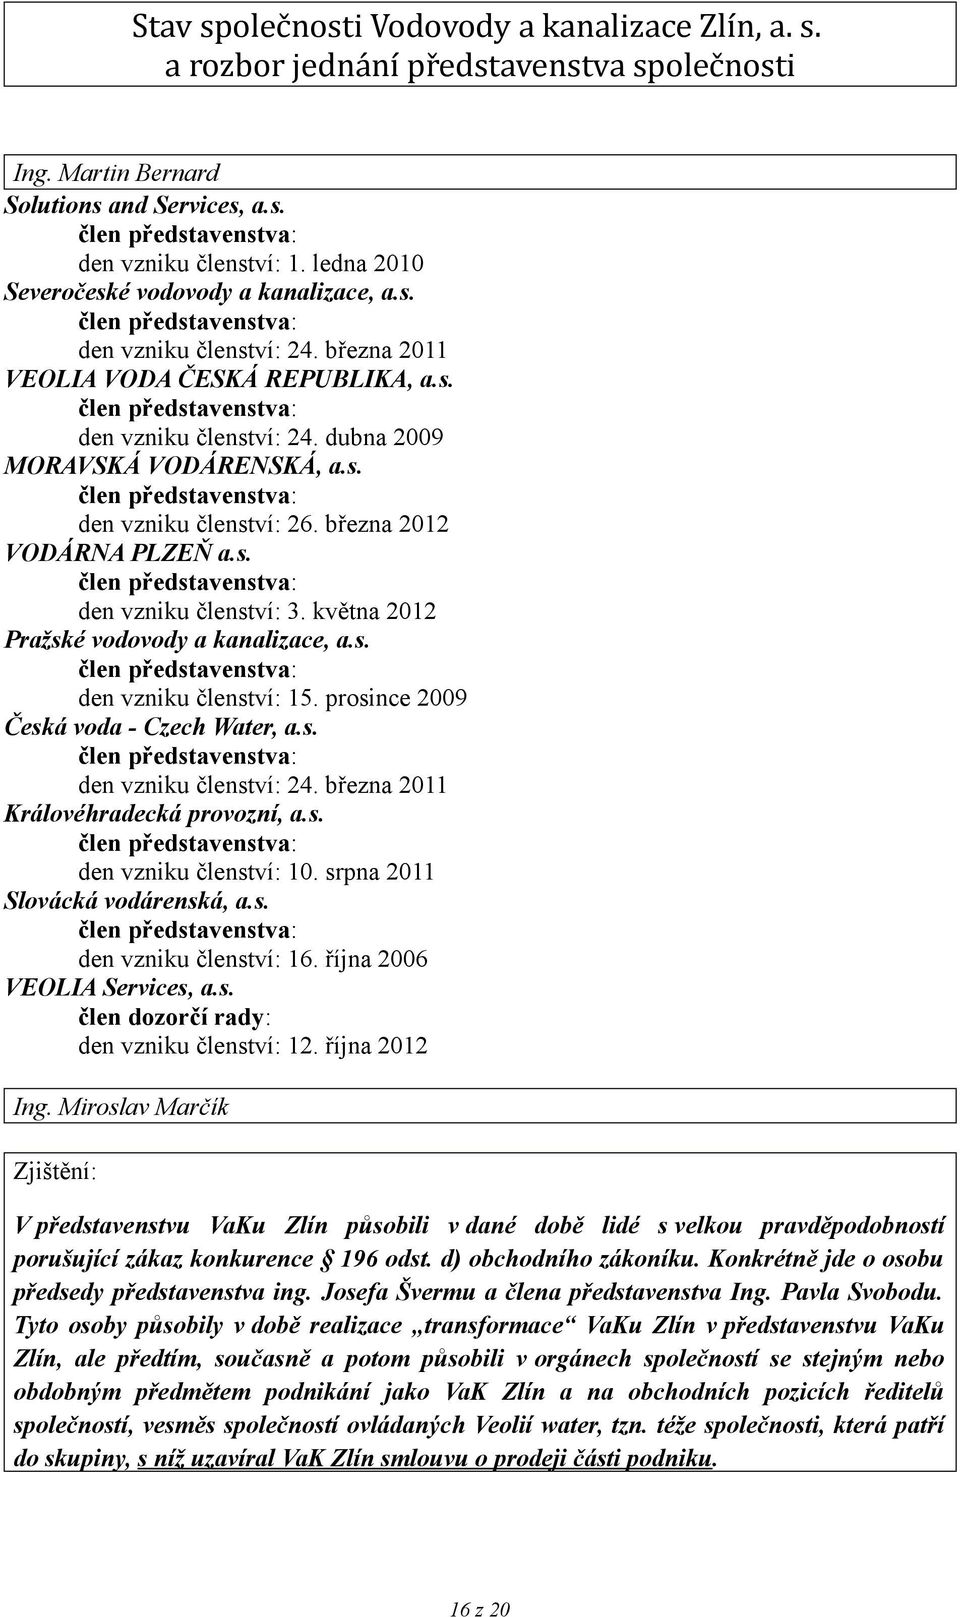 března 2011 Královéhradecká provozní, a.s. den vzniku členství: 10. srpna 2011 Slovácká vodárenská, a.s. den vzniku členství: 16. října 2006 VEOLIA Services, a.s. člen dozorčí rady: den vzniku členství: 12.